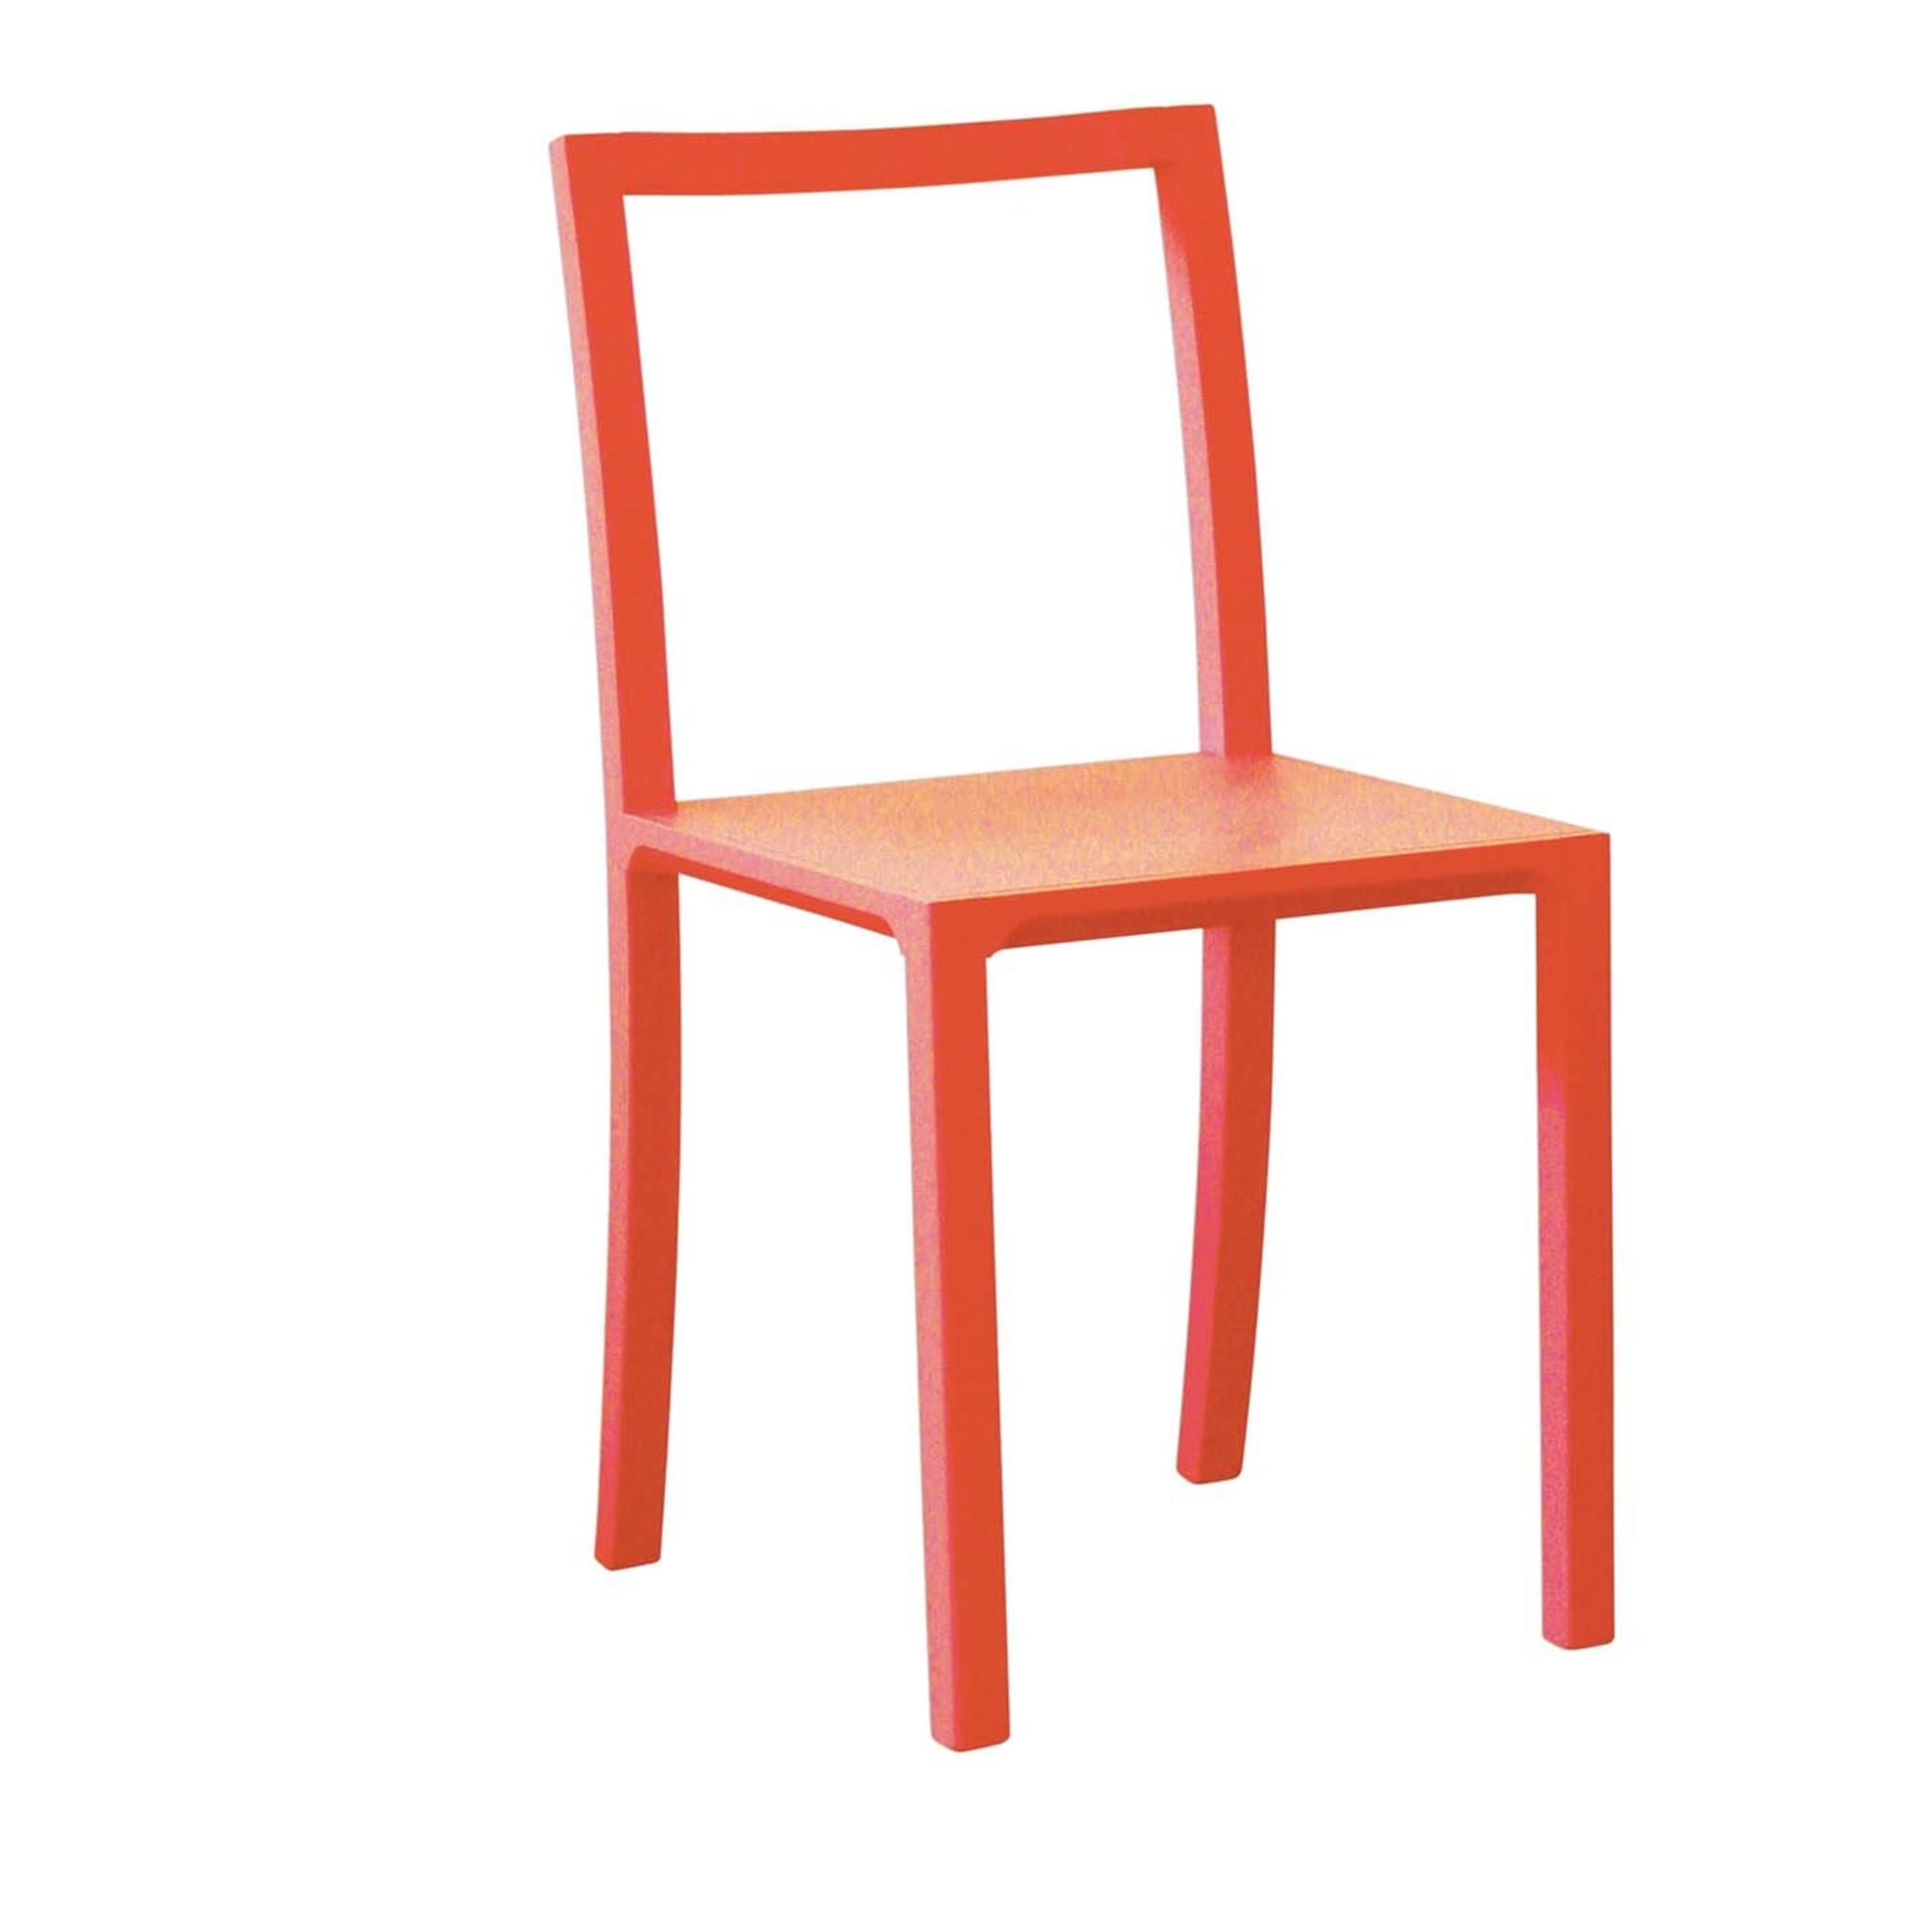 Framework 2er set orange stühle by Steffen Kehrle - Hauptansicht